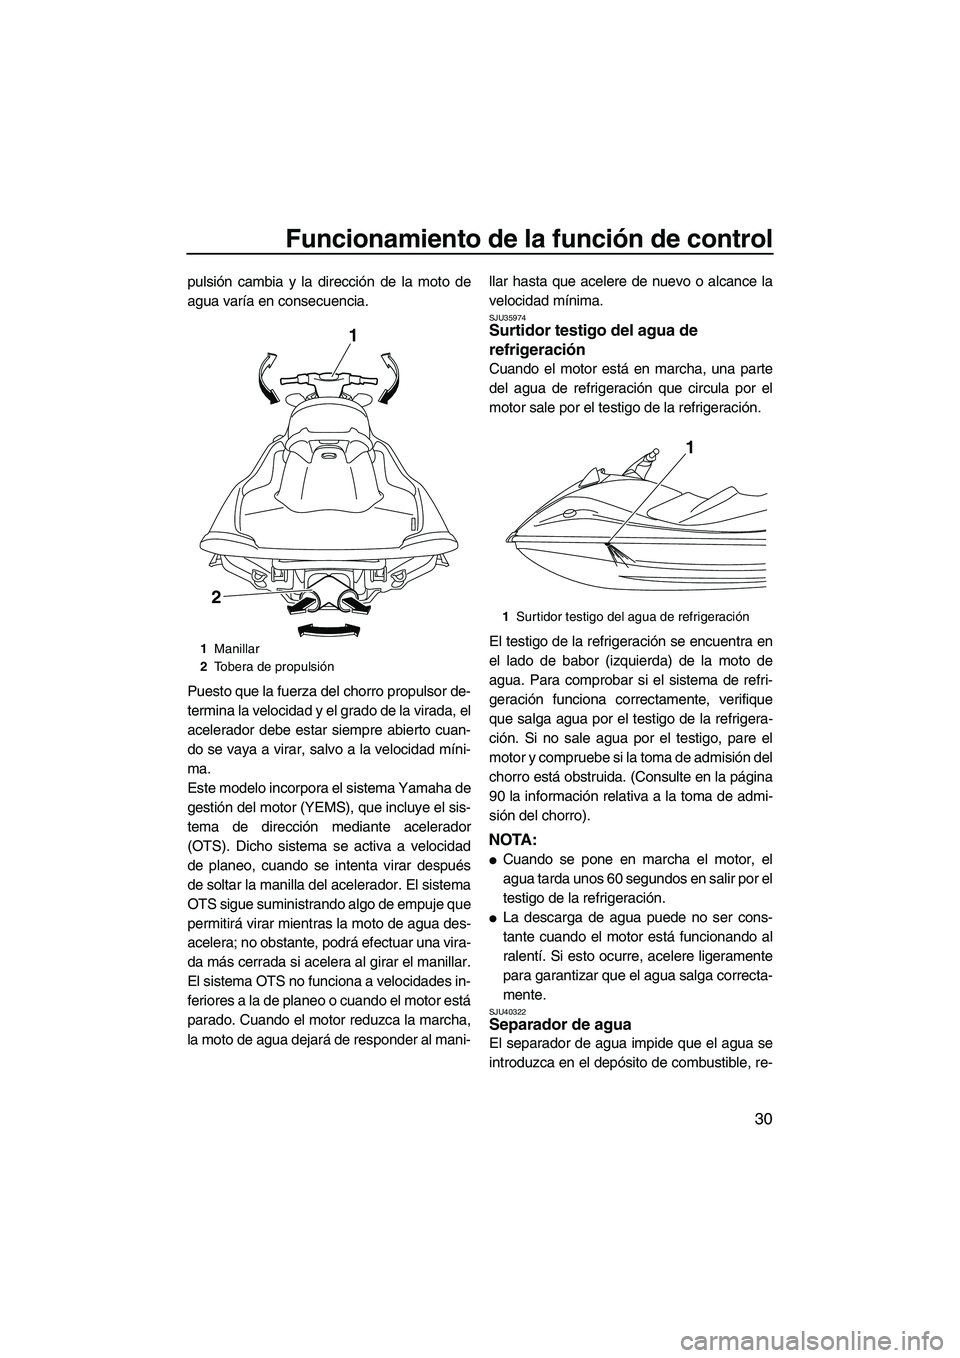 YAMAHA VXR 2013  Manuale de Empleo (in Spanish) Funcionamiento de la función de control
30
pulsión cambia y la dirección de la moto de
agua varía en consecuencia.
Puesto que la fuerza del chorro propulsor de-
termina la velocidad y el grado de 